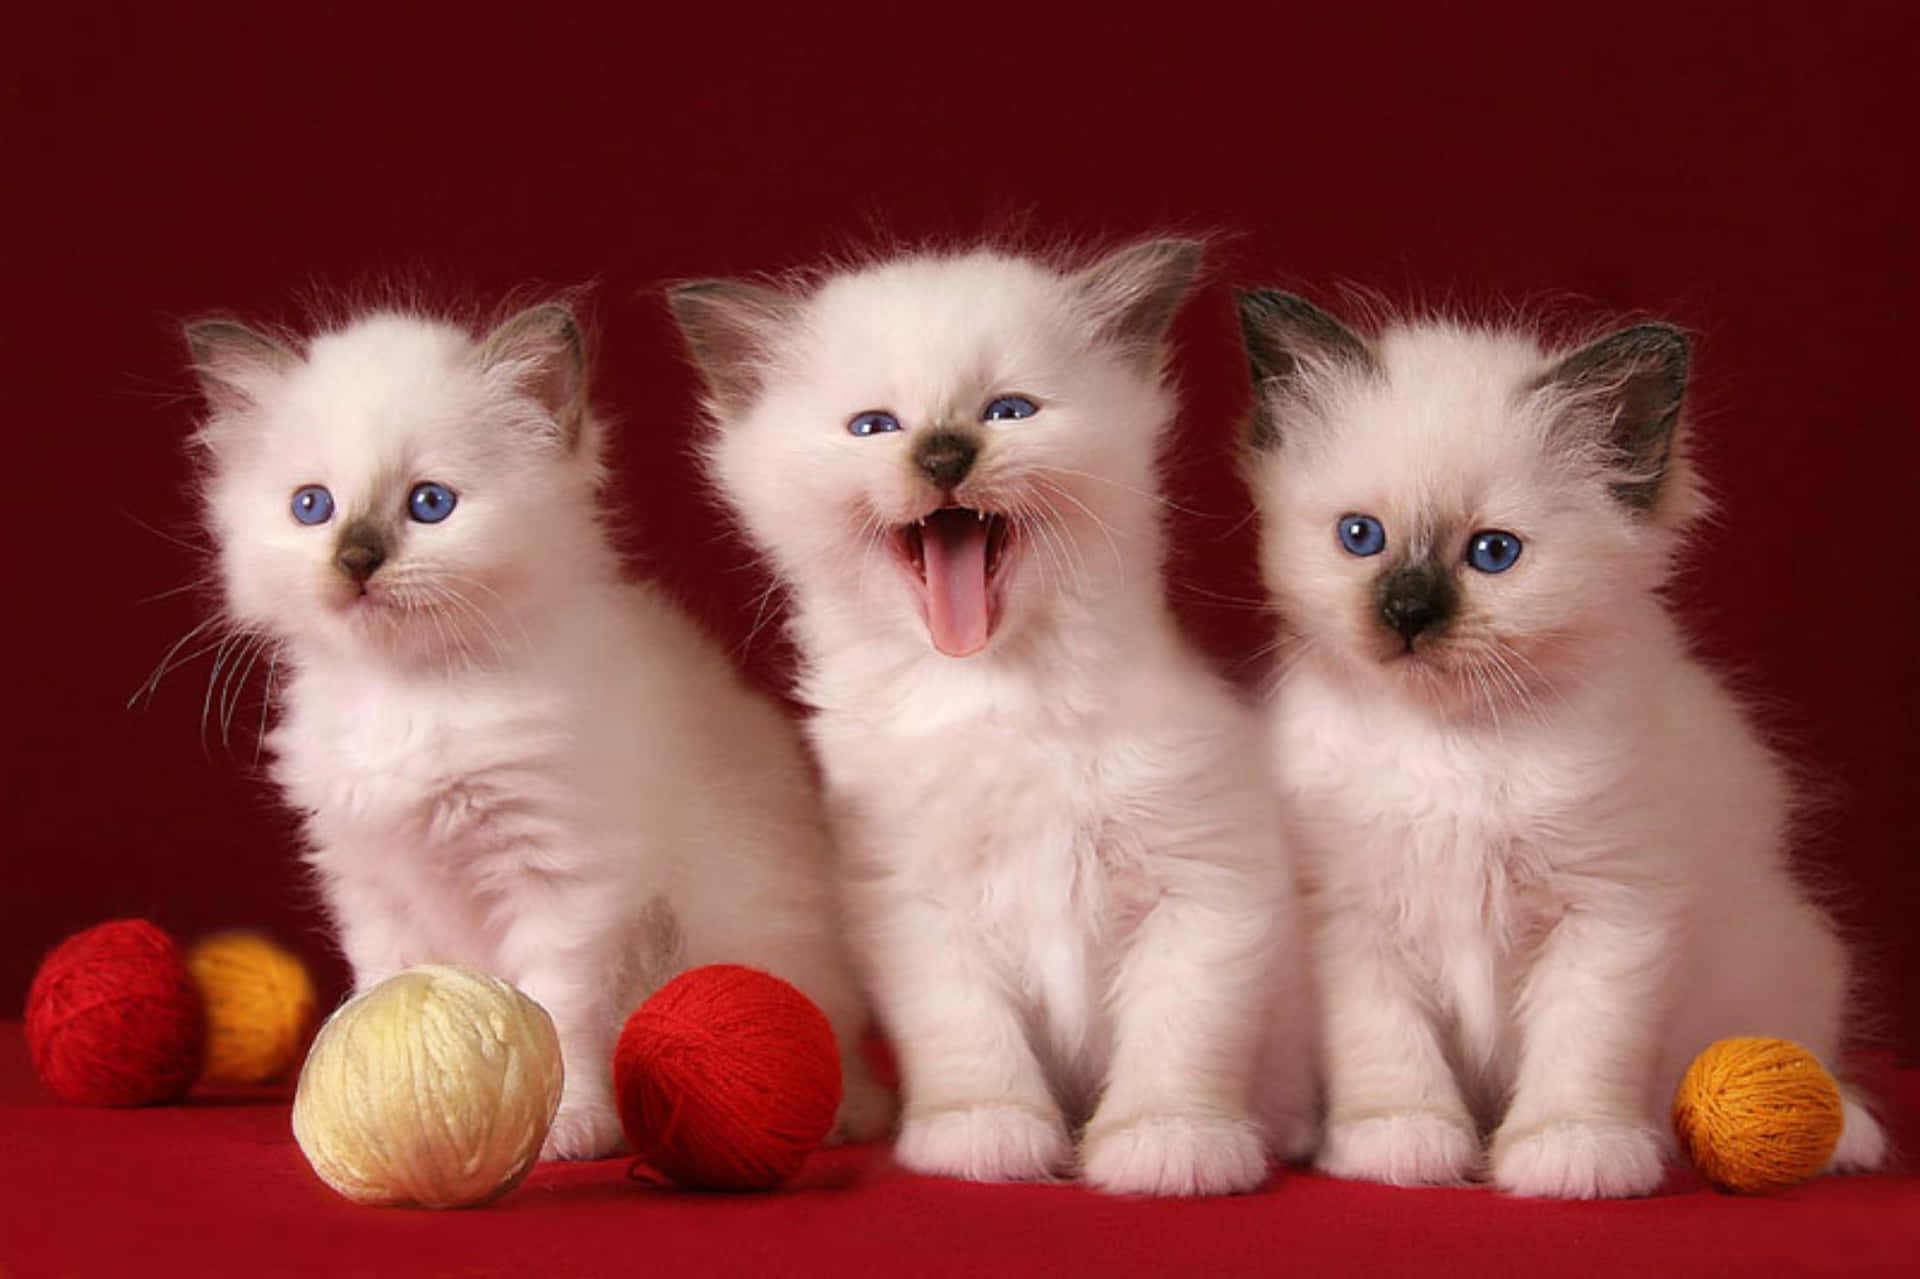 Aesthetic cat PFP  Cute cats photos, Cute cats, Funny cute cats